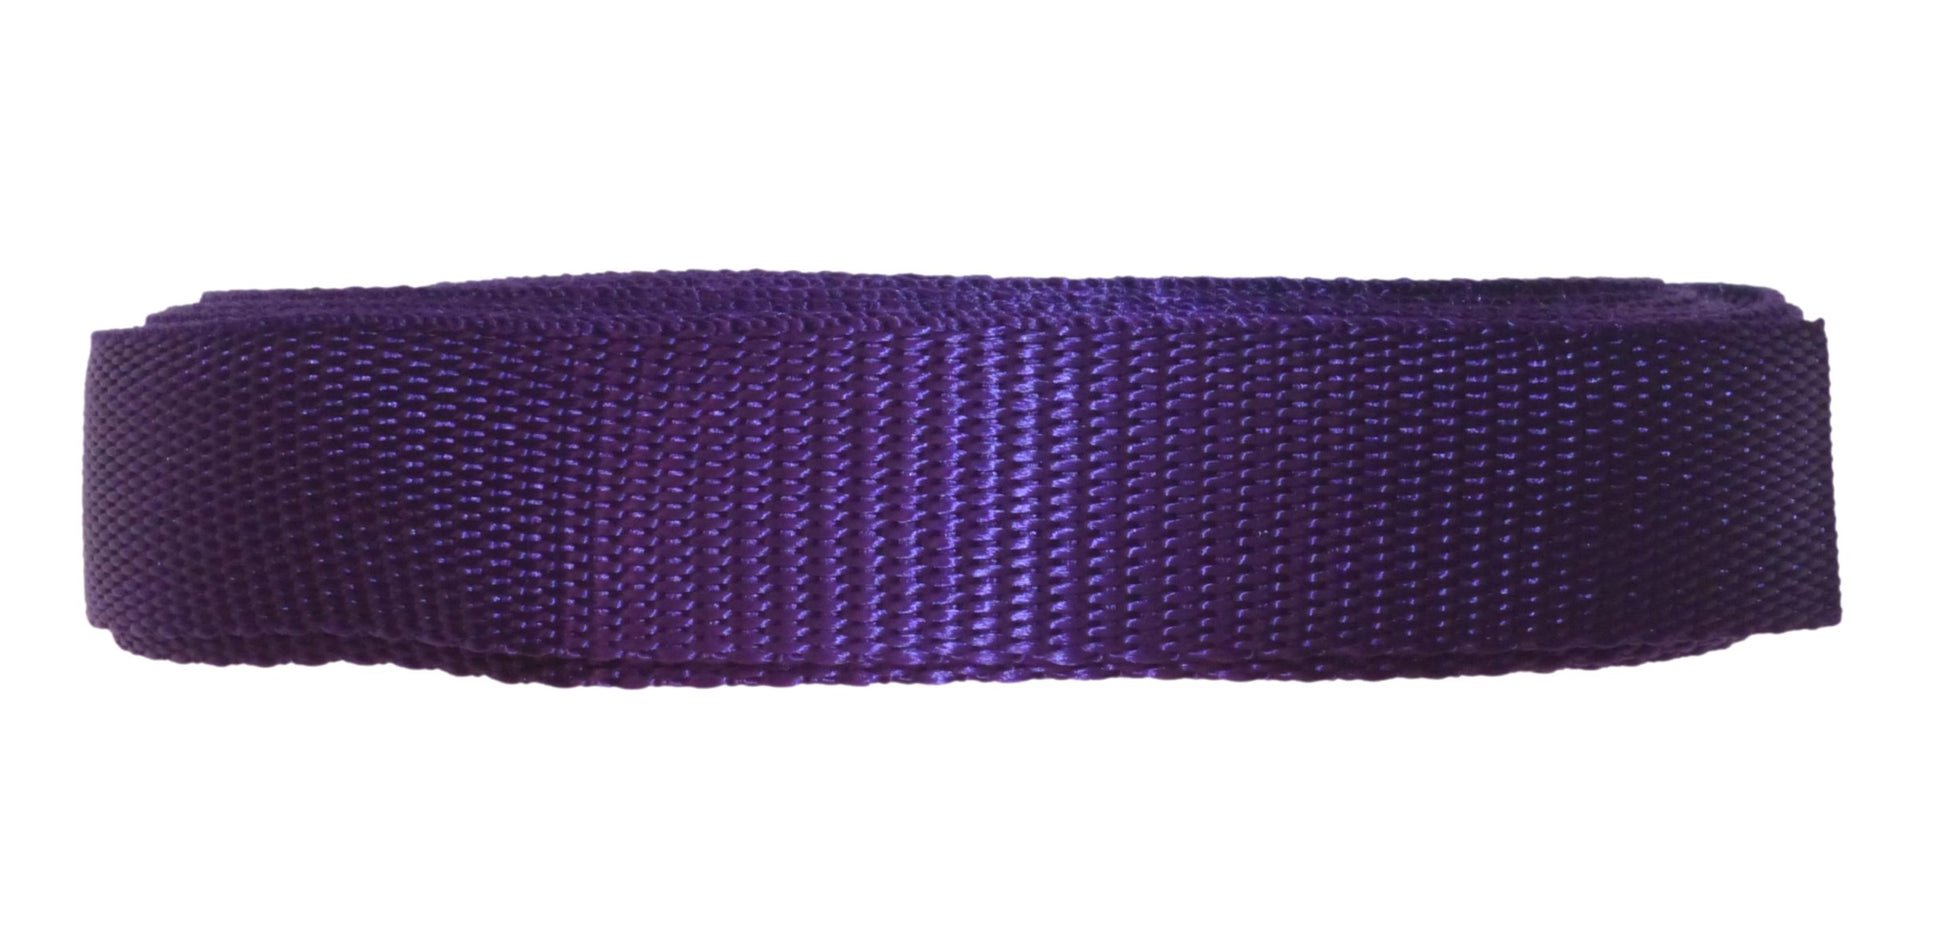 Benristraps 25mm Polypropylene Webbing, 10 metres (32') in purple